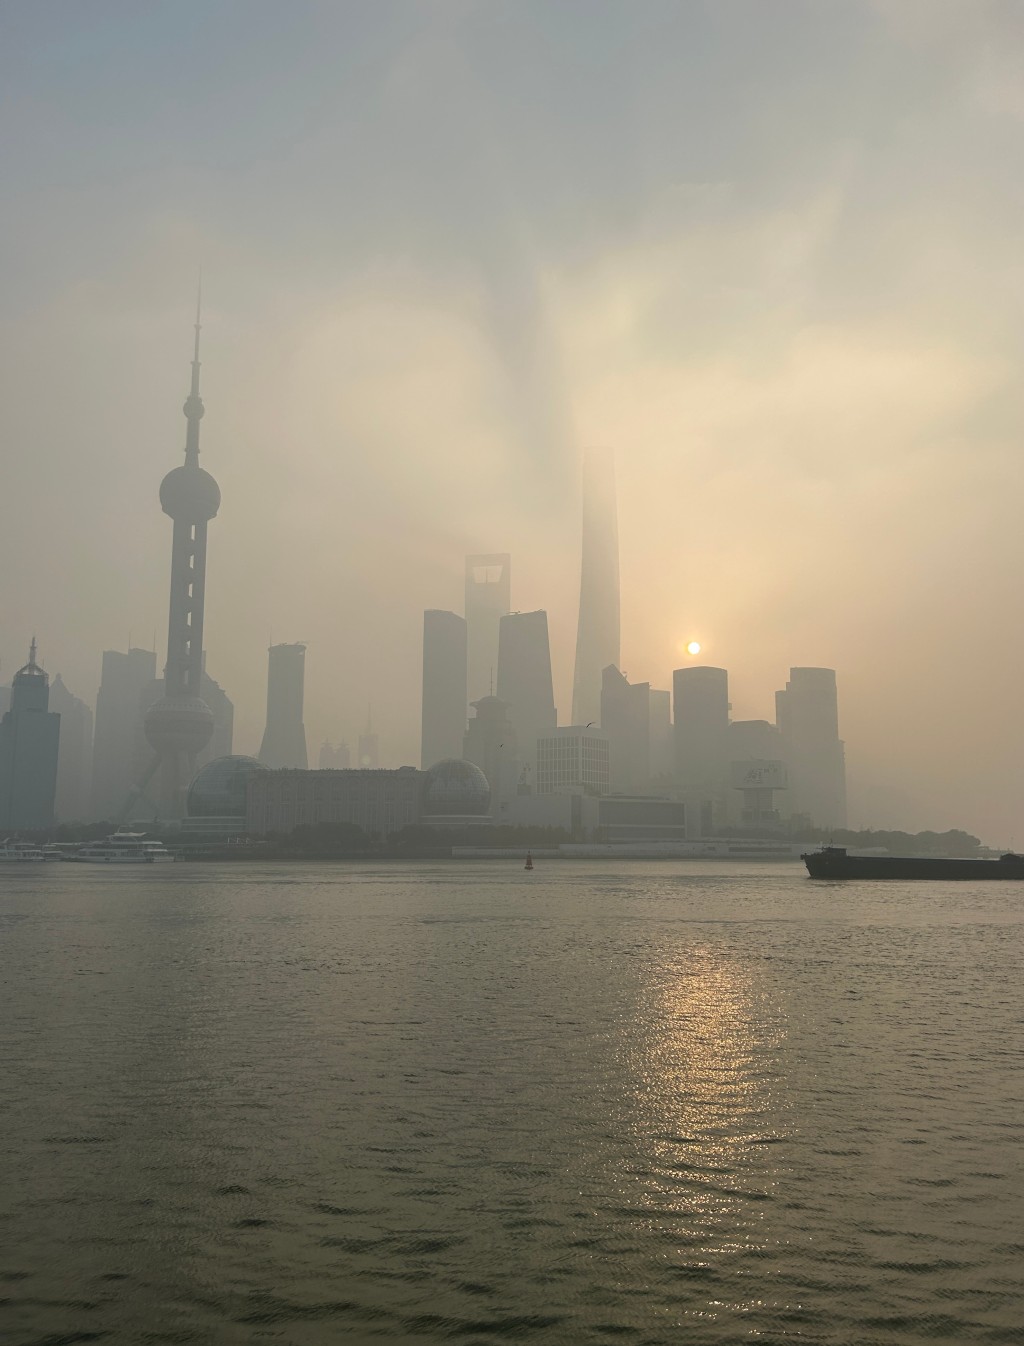 強霧霾天氣影響下，上海戶外能見度極差，當局提醒民眾非必要勿戶外活動。微博